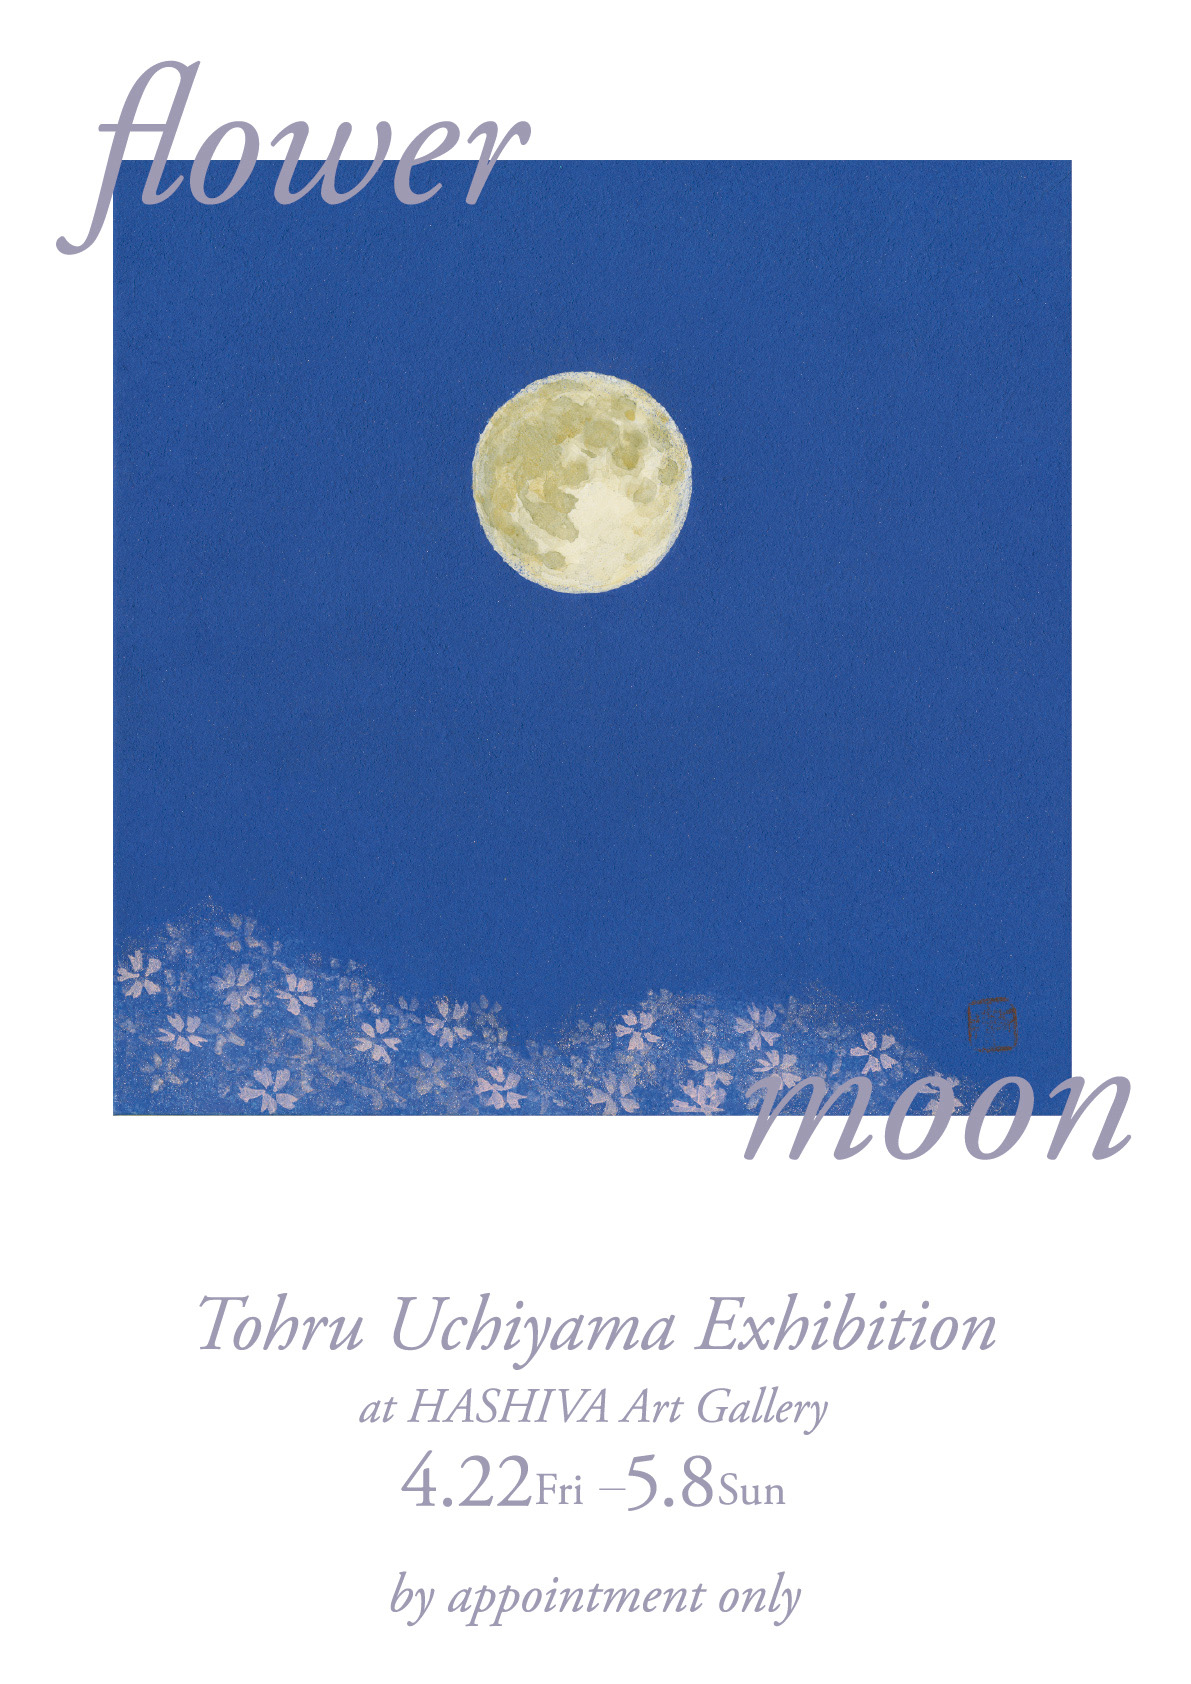 アートギャラリーHASHIVAで開催の日本画家内山徹の個展『flower moon』のポスター